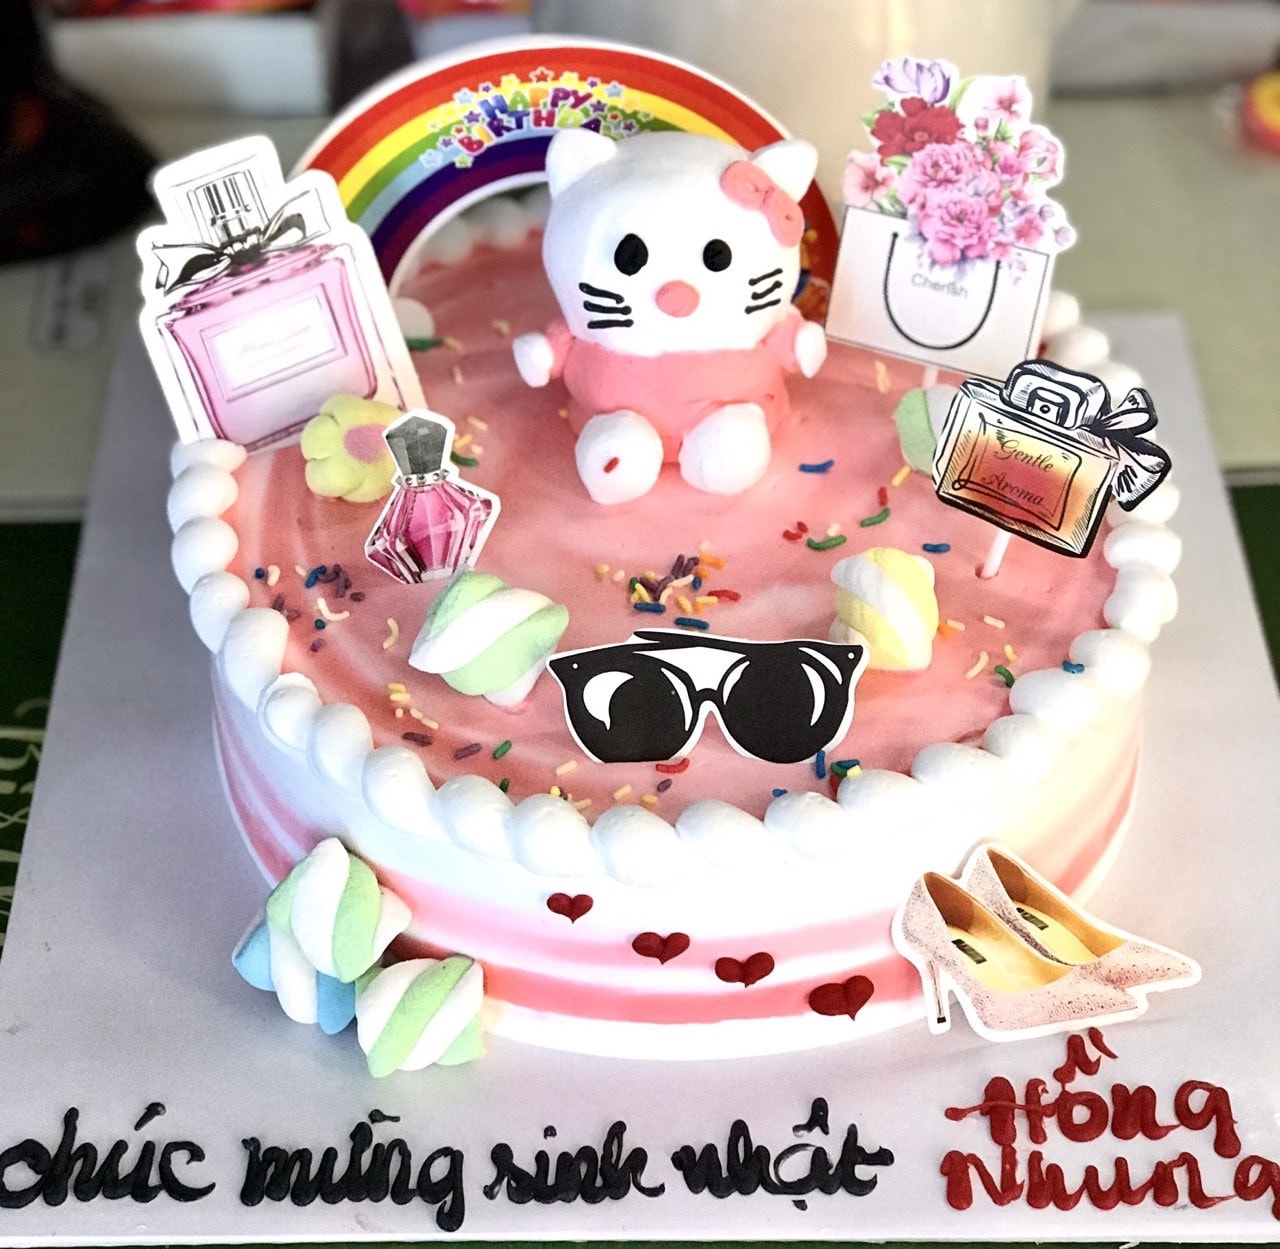 Hãy tạo ra một chút đột phá cho ngày sinh nhật của mình với một chiếc bánh sinh nhật độc đáo. Với ý tưởng mới lạ và thiết kế tinh tế, chiếc bánh kem này không chỉ là một món quà đặc biệt mà còn là một tác phẩm nghệ thuật được làm bằng tình yêu và công sức.